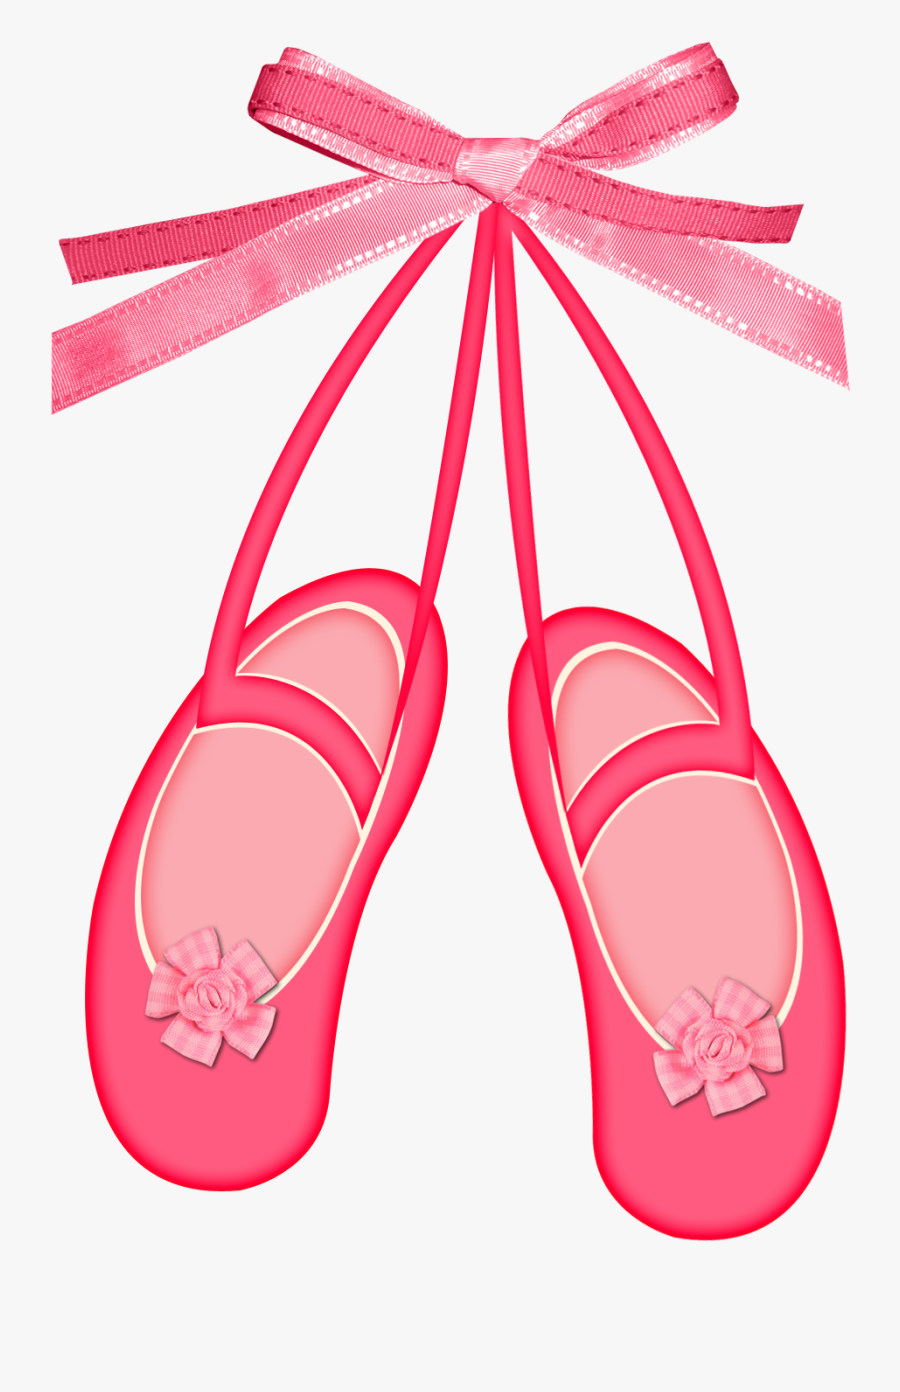 Undertale Ballet Shoes Pixel , Free Transparent Clipart - Cl